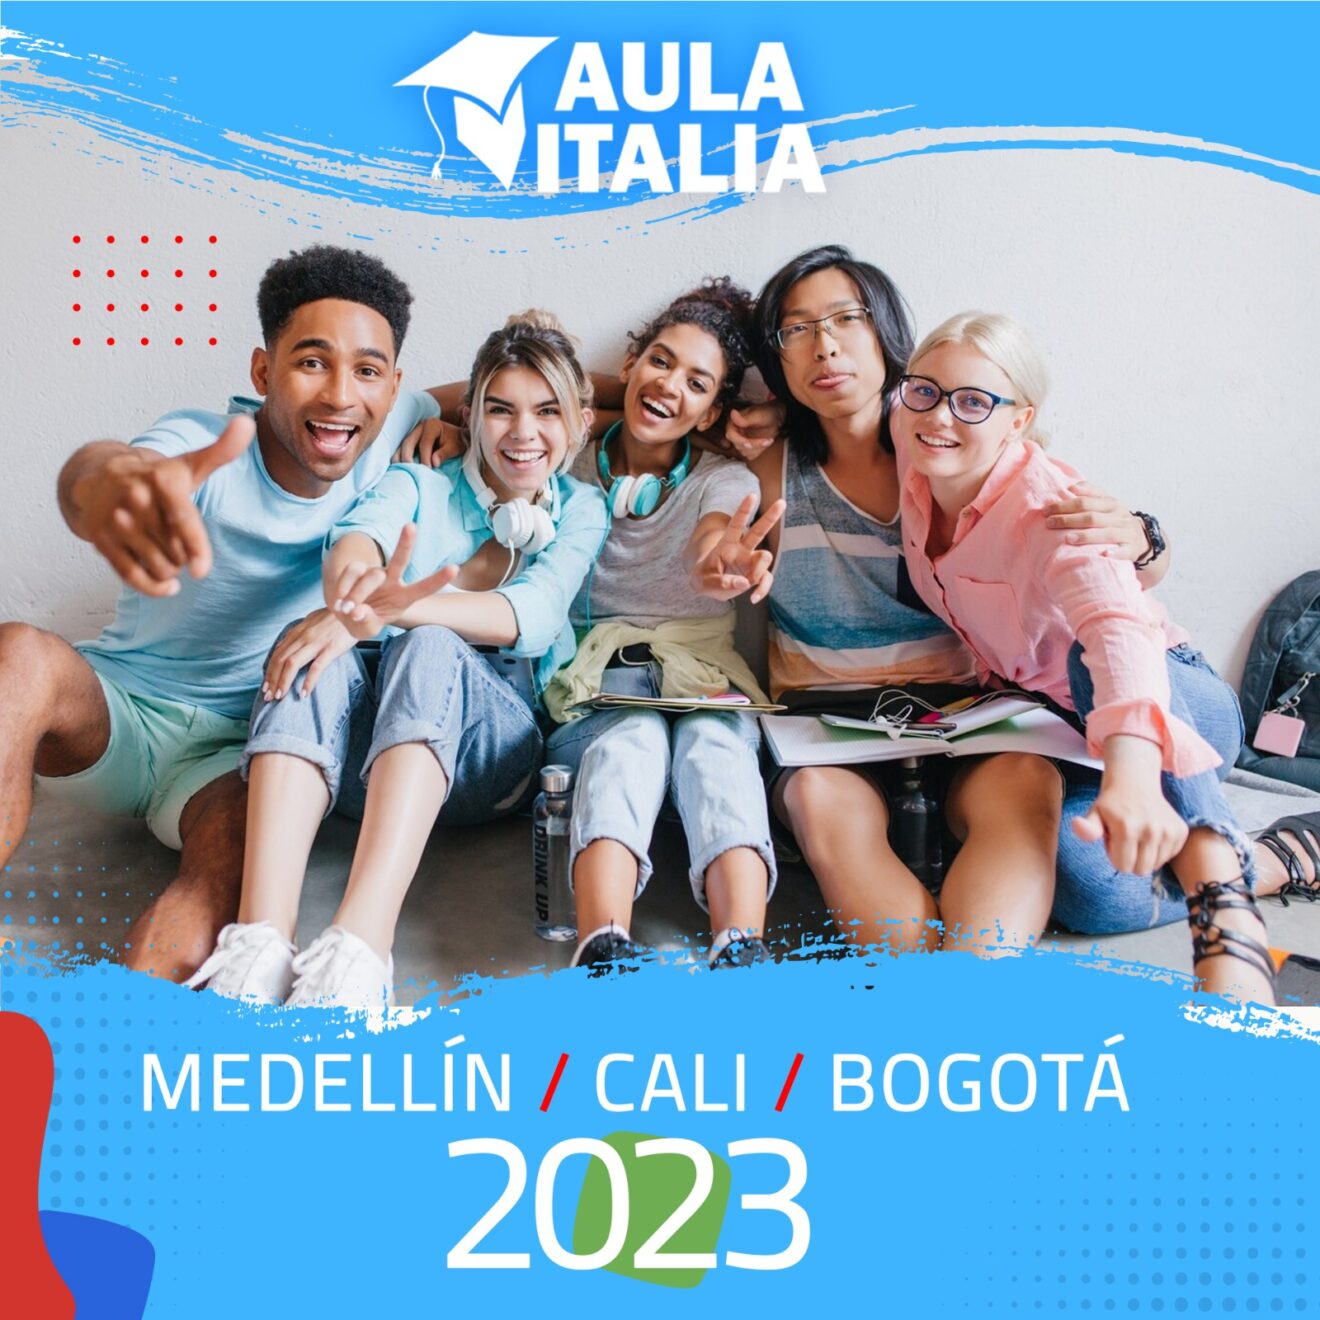 Unistrasi partecipa a Aula Italia 2023 (Colombia)